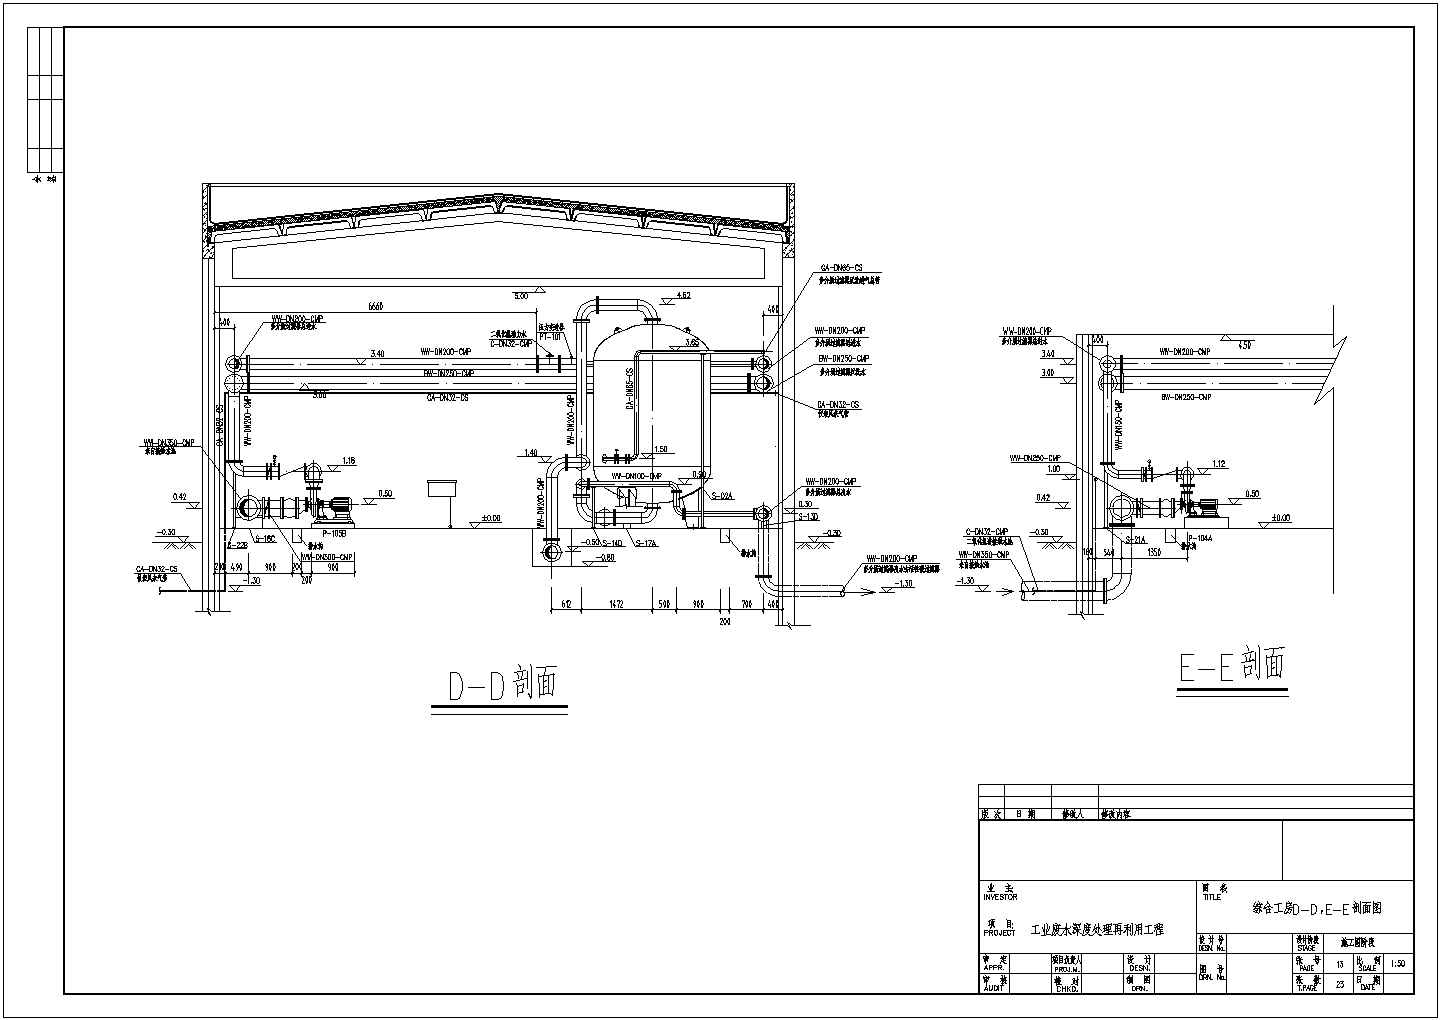 某综合工房工业废水深度处理工艺设计详细方案CAD图纸